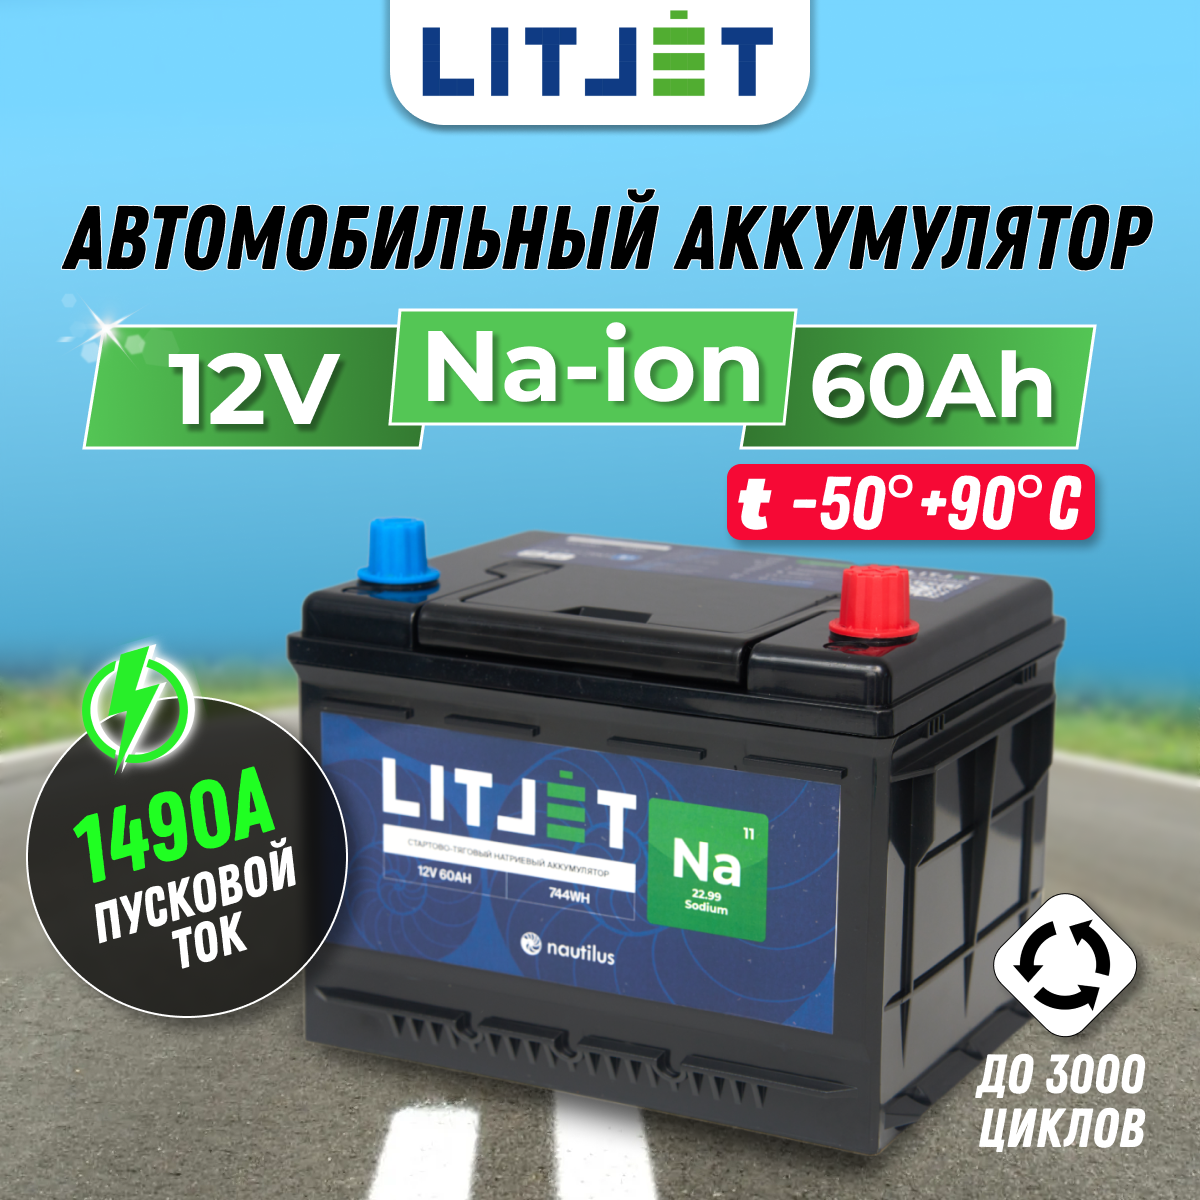 Автомобильный натрий-ионный стартово-тяговый аккумулятор LITJET 12V 60Ah 744Wh 1490CCA